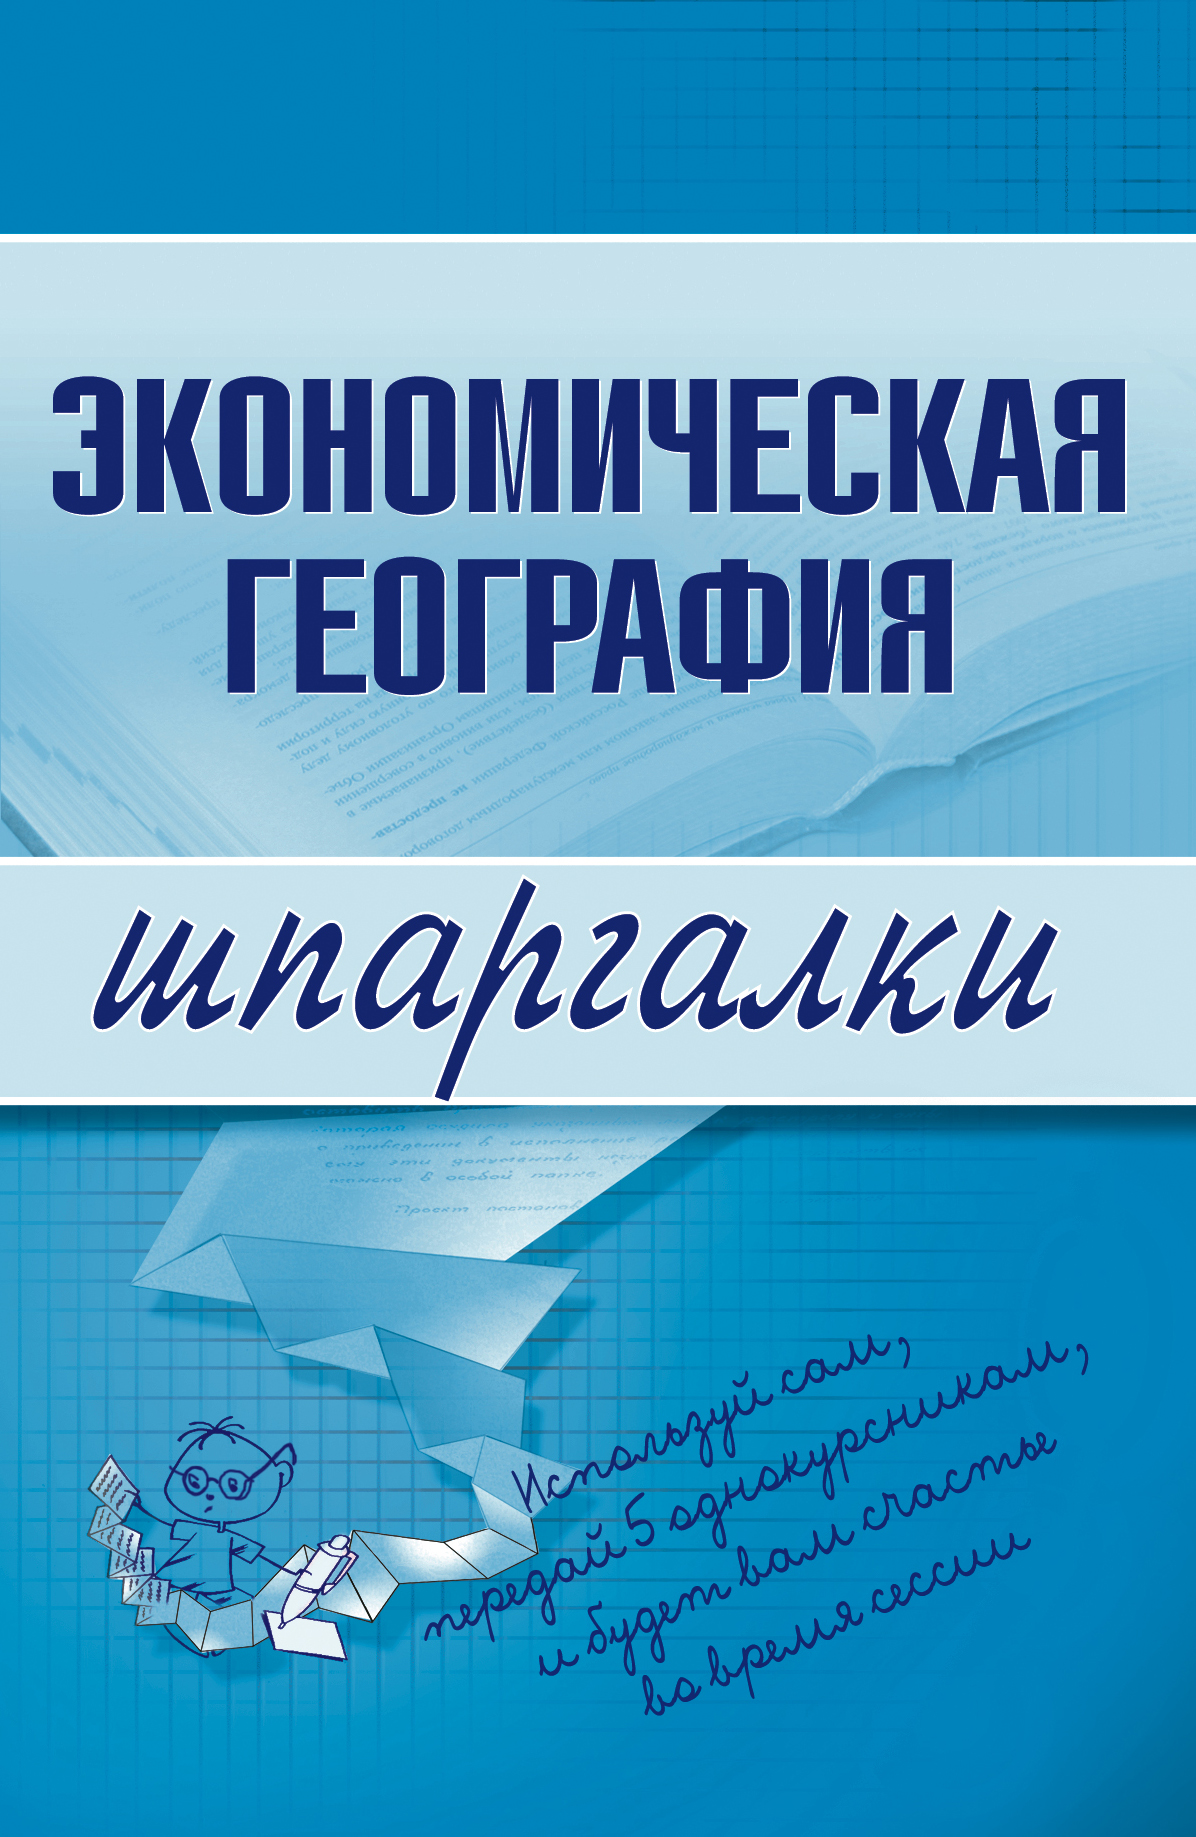 Книга Экономическая география из серии , созданная Наталья Бурханова, может относится к жанру Экономика. Стоимость электронной книги Экономическая география с идентификатором 179787 составляет 44.95 руб.